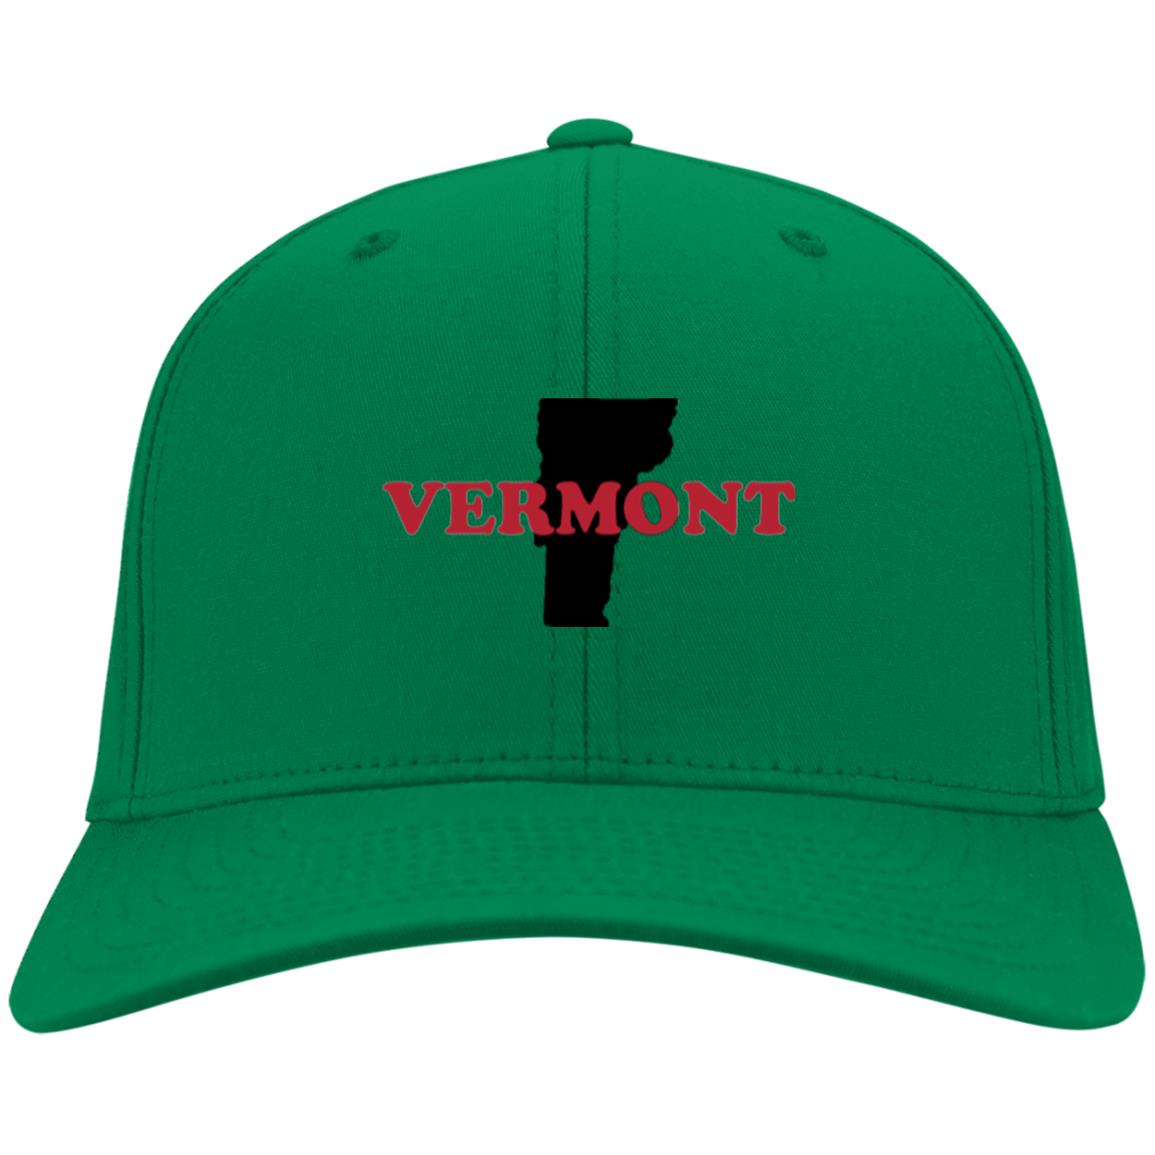 Vermont State Hat